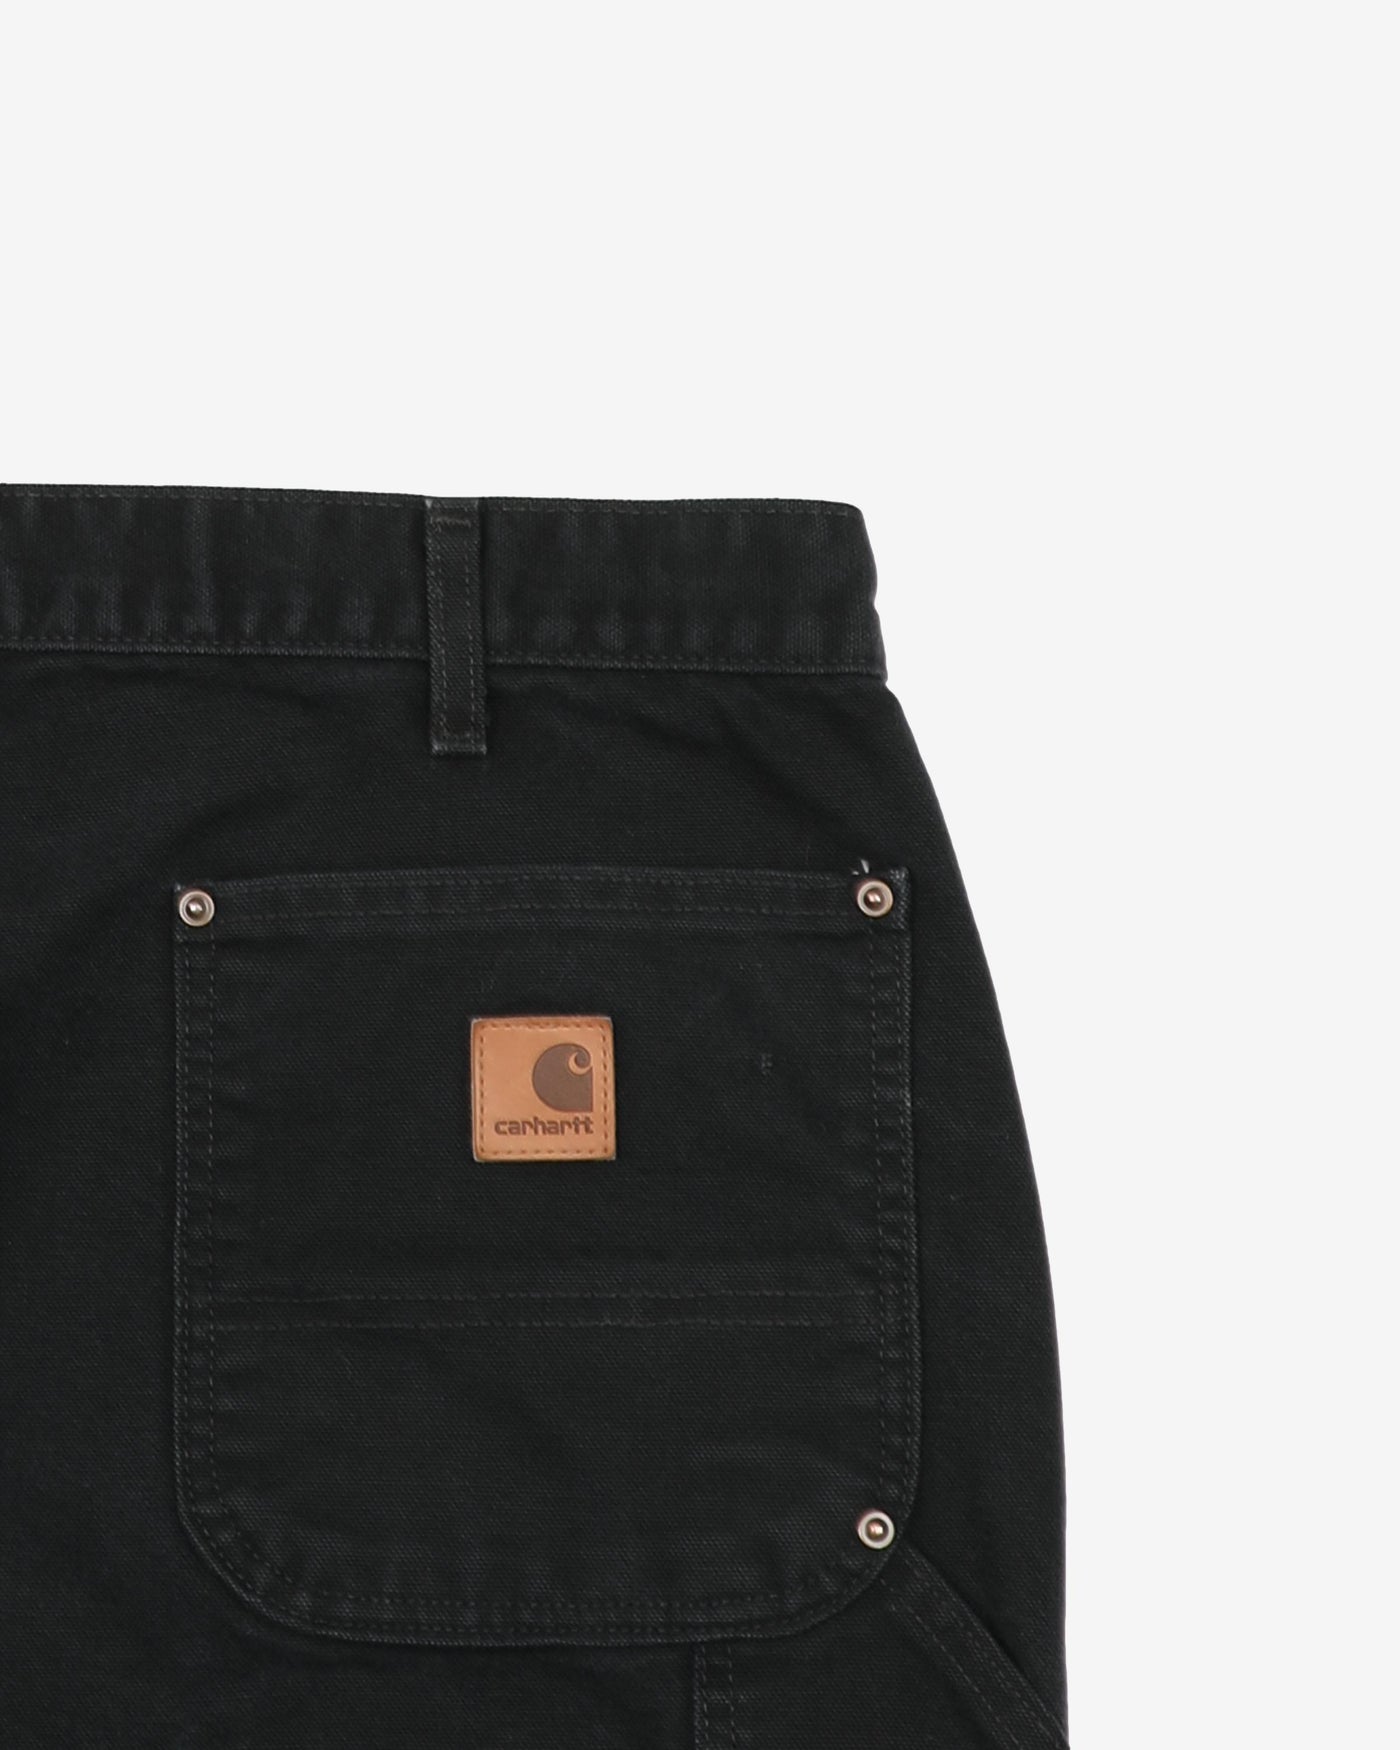 Carhartt Black Double Knee Workwear Jeans - W36 L29